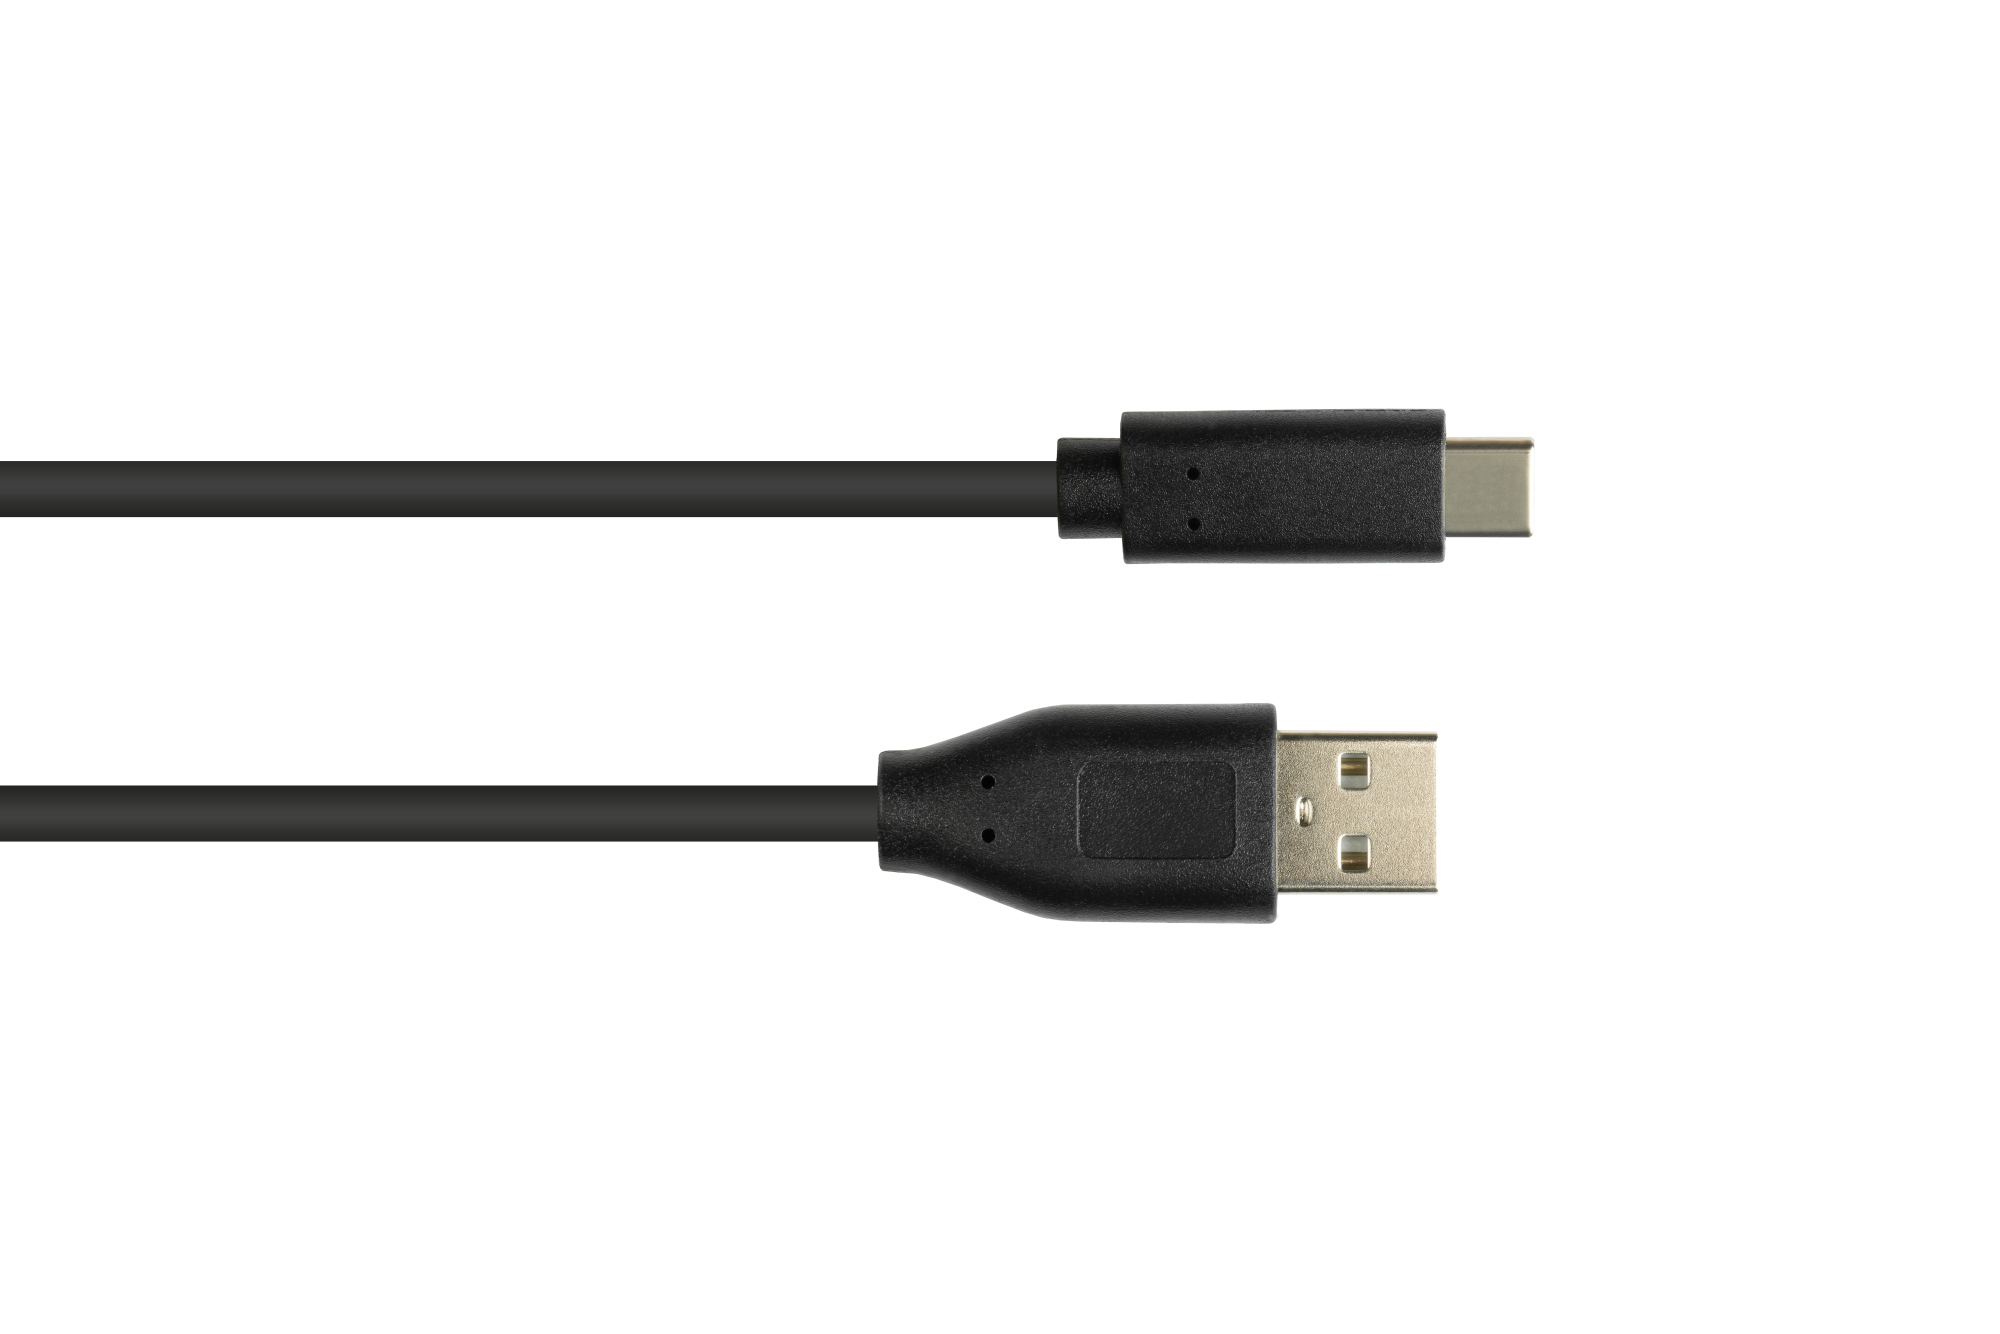 Anschlusskabel USB 2.0, USB 2.0 A Stecker an USB-C™ Stecker, CU, schwarz, 2m, Good Connections®